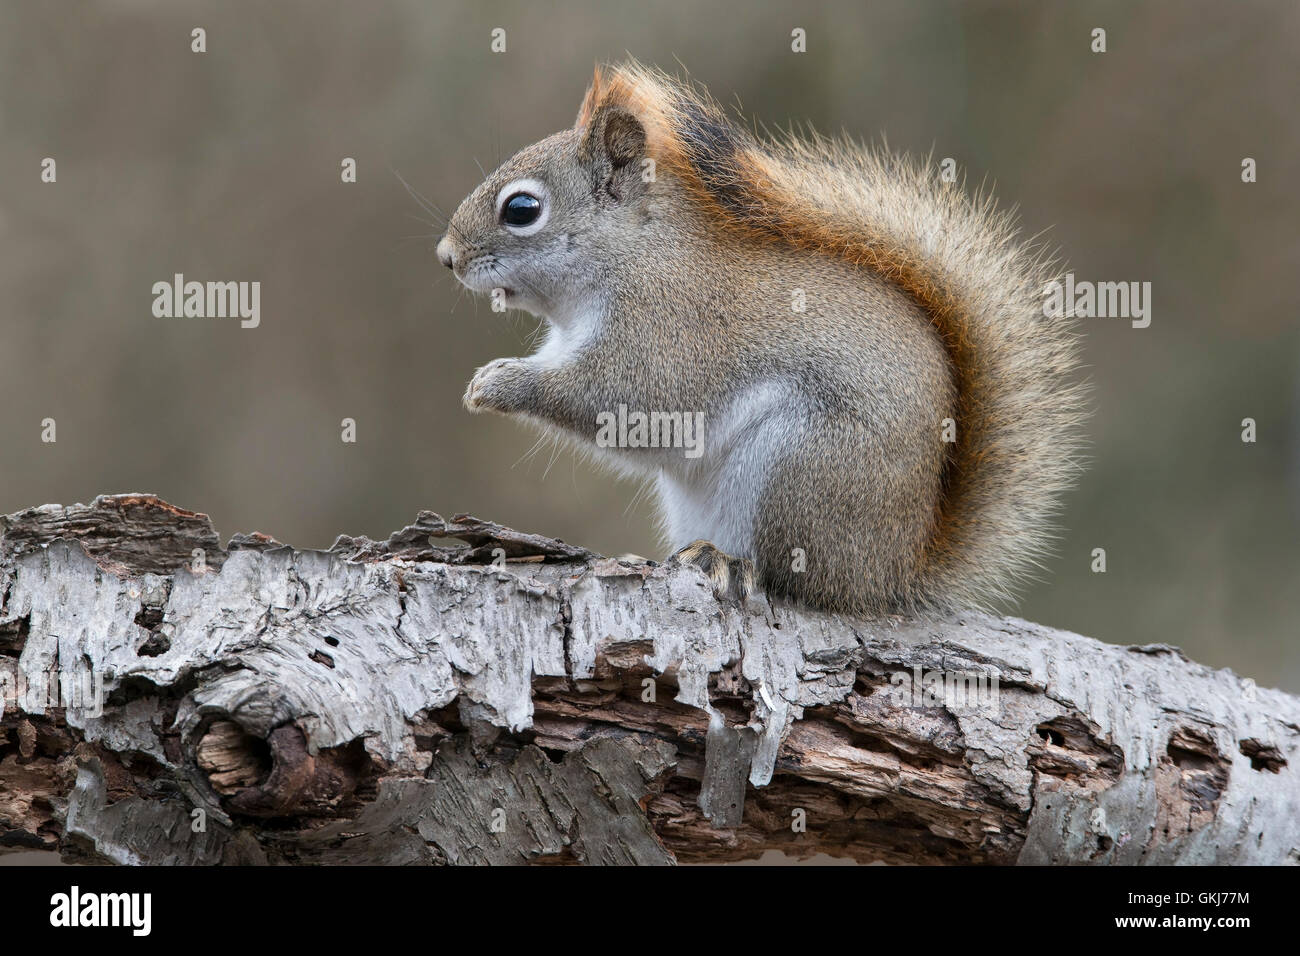 Eastern scoiattolo rosso alla ricerca di cibo (Tamiasciurus o Sciurus hudsonicus), seduti su bianco betulla, inverno, E STATI UNITI D'AMERICA Foto Stock